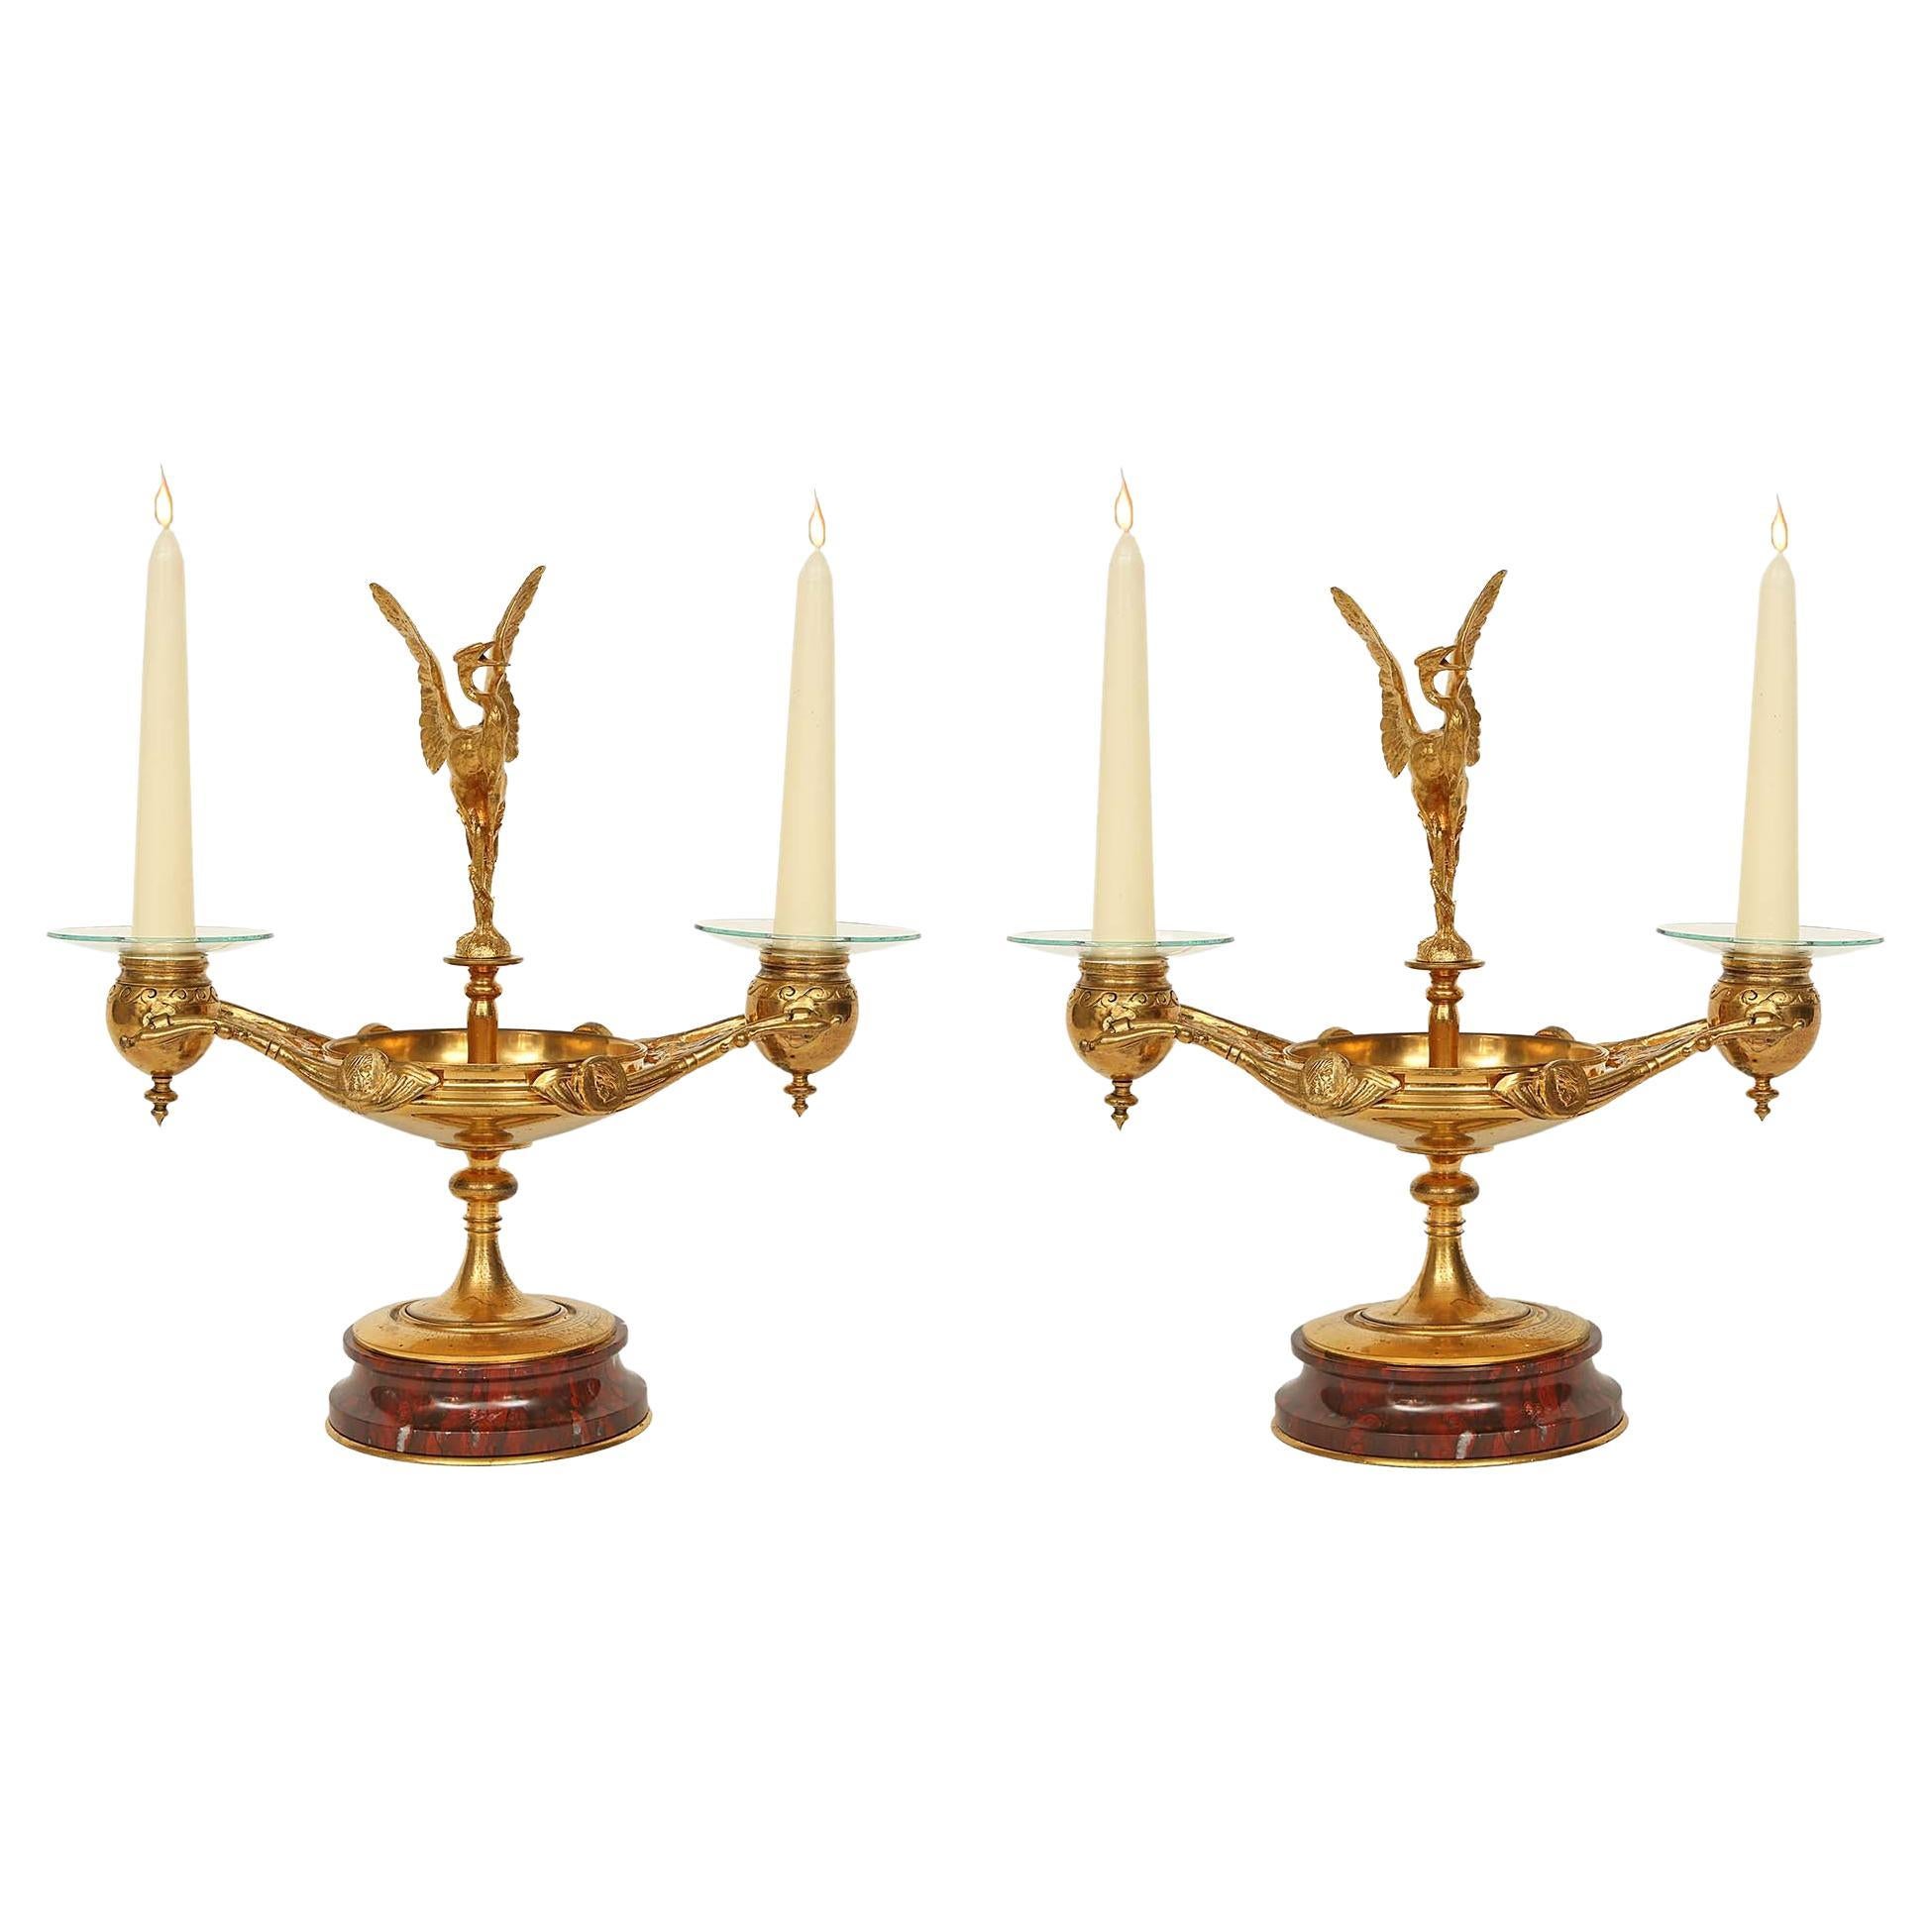 Paire de candélabres français de style Renaissance du 19ème siècle en bronze doré et marbre